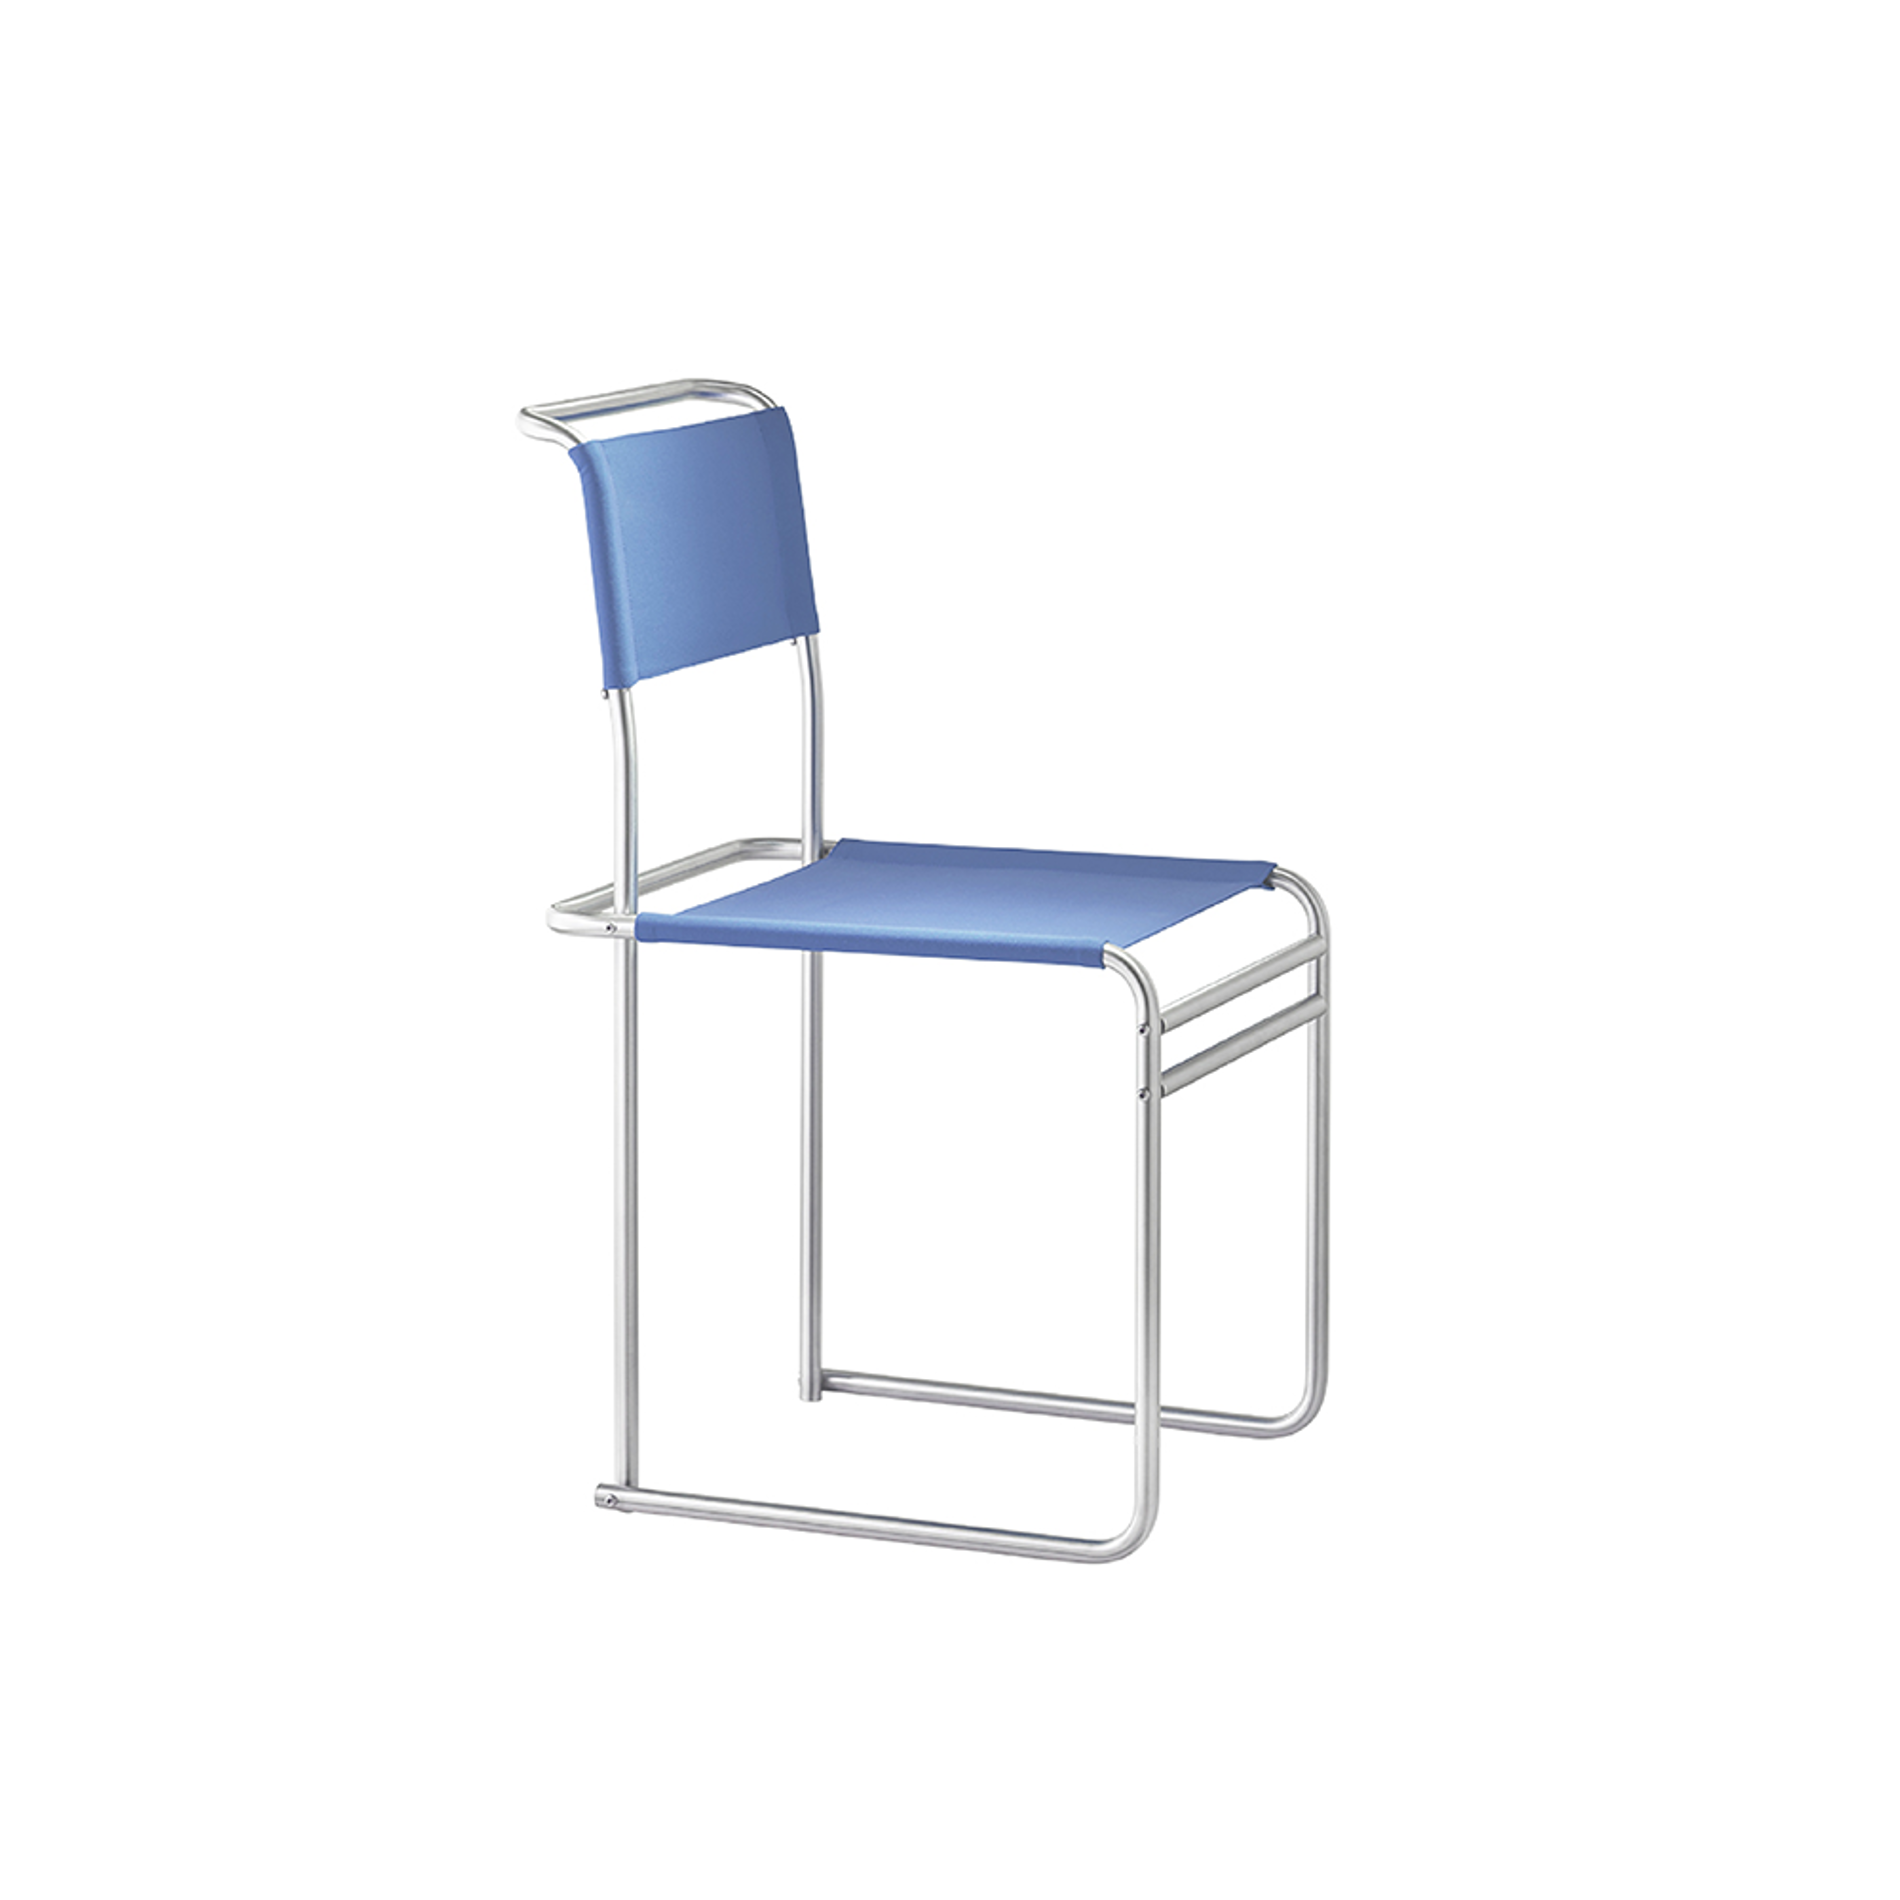 TECTA B40 Breuer Chair - Blue 2 (Bauhaus Strap)